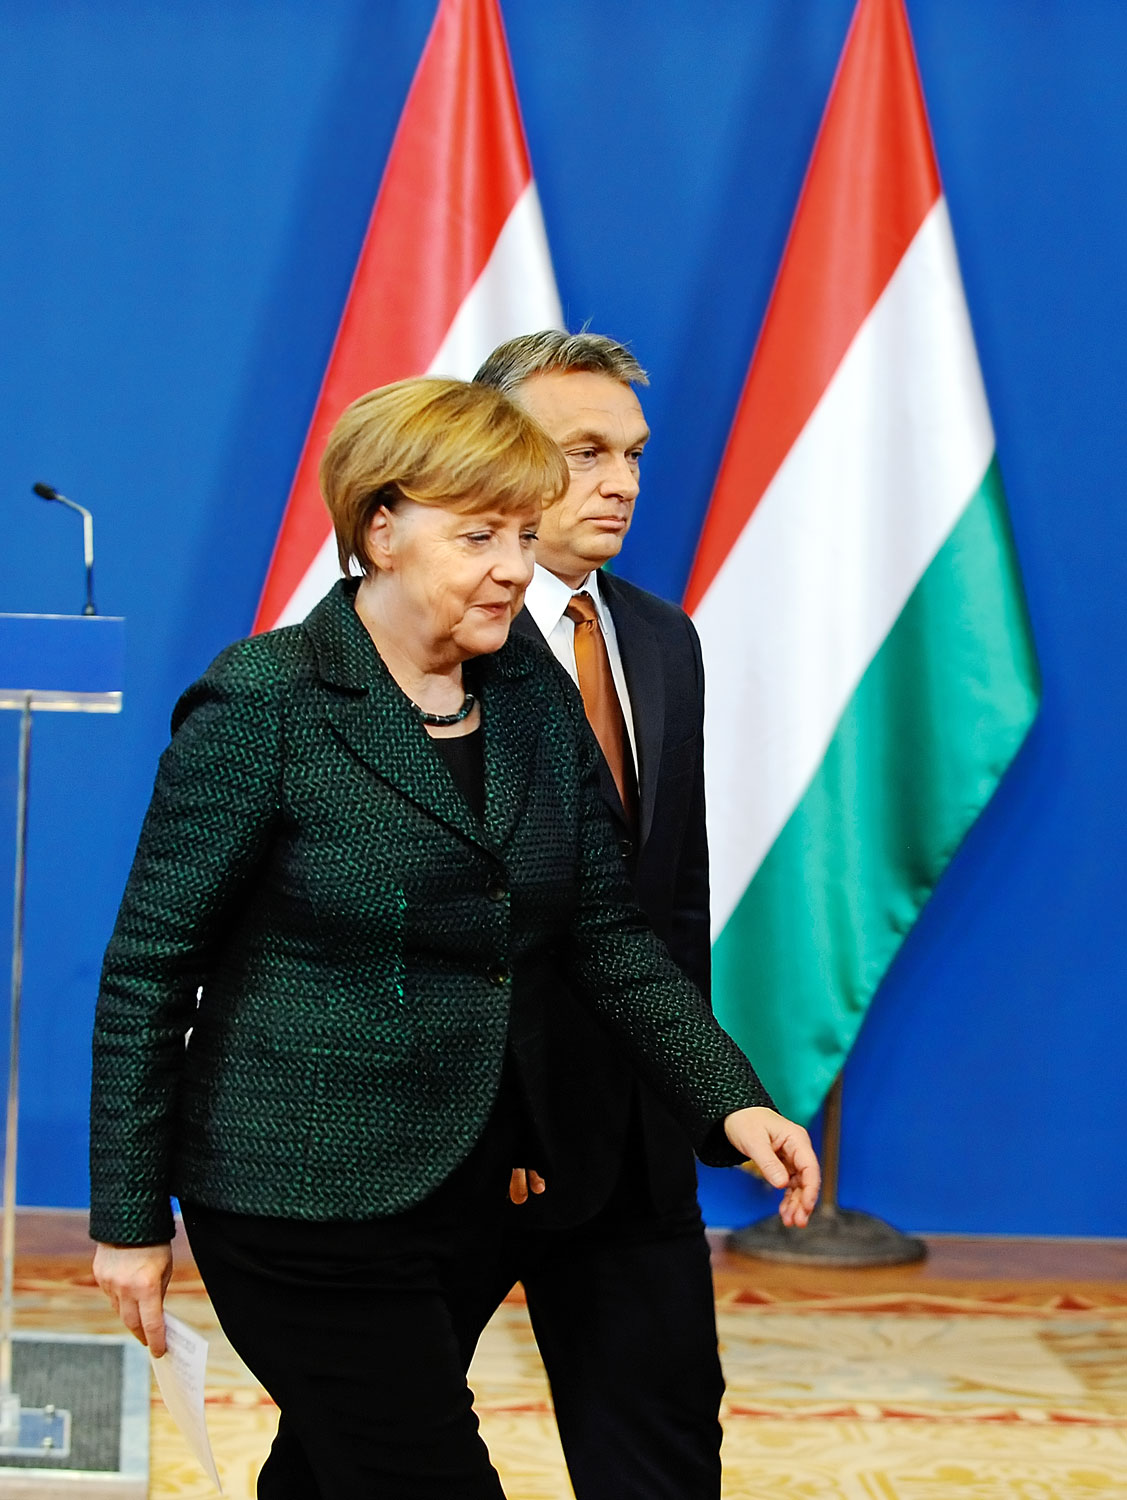 Amikor Angela Merkel vitába szállt Orbán Viktorral a demokrácia fogalmáról, a politika iránt érdeklődő német polgárok kedvére tett.Igaza volt a magyar kormánytagnak, hogy a kancellár – miközben szívéből szólt – hazabeszélt. Tőle ezt várja el a válasz